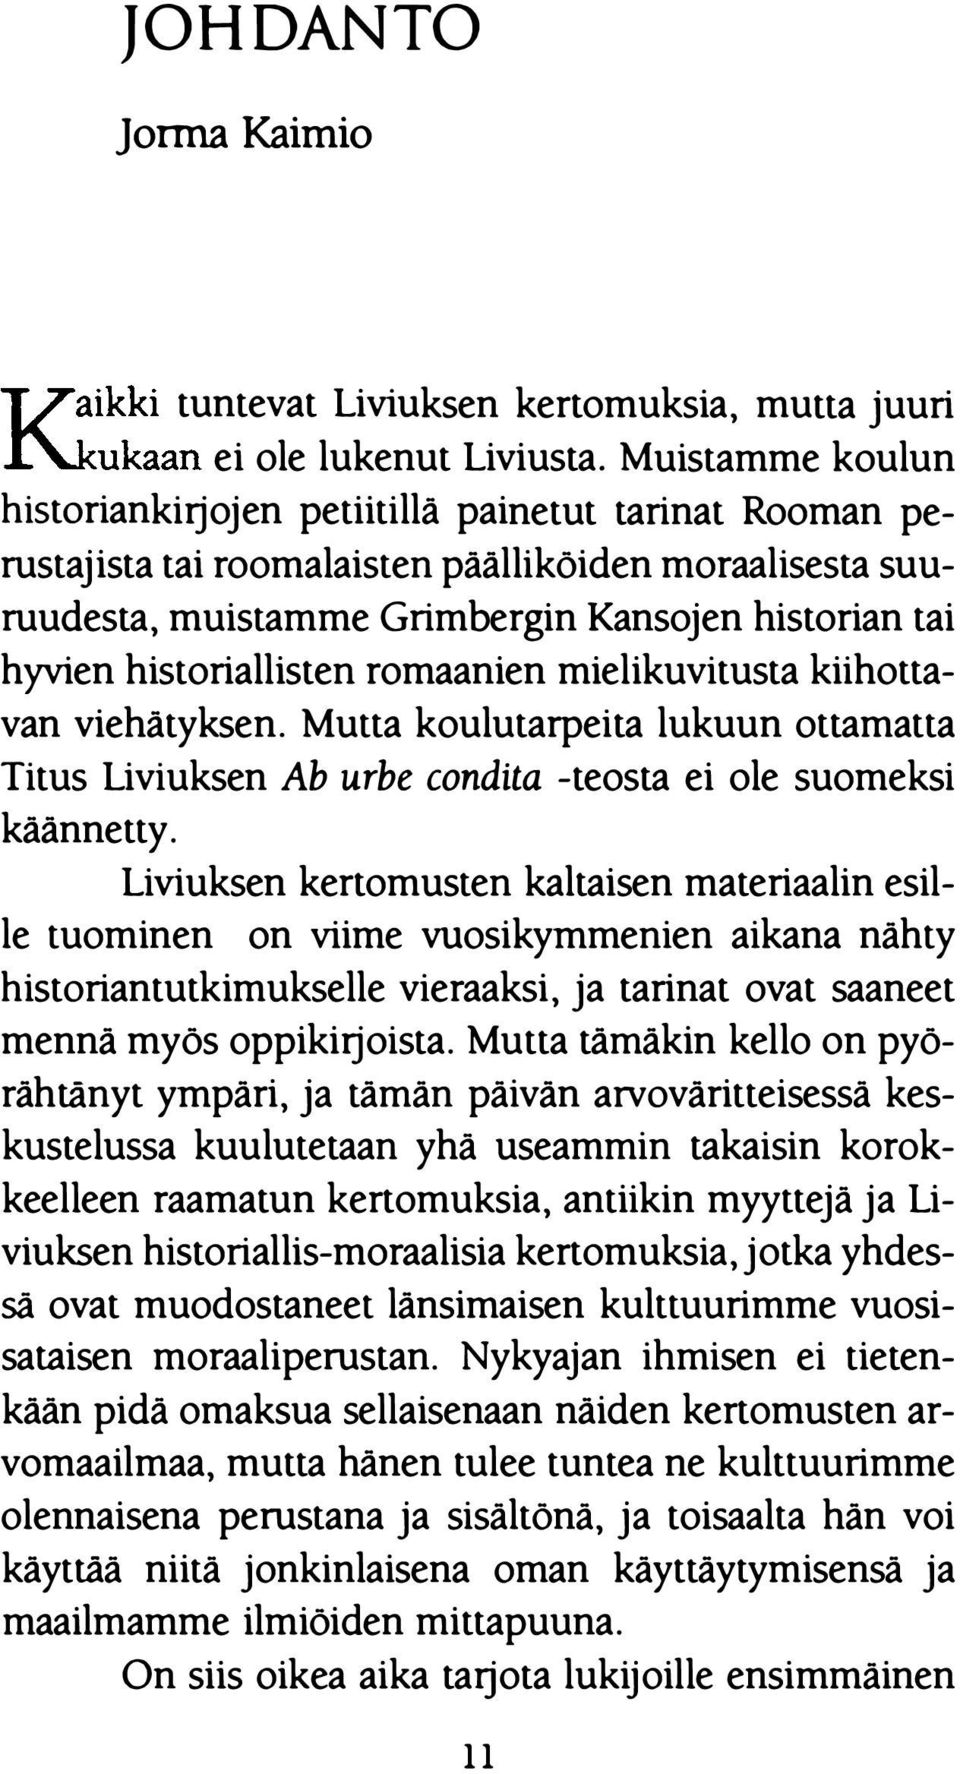 historiallisten romaanien mielikuvitusta kiihottavan viehätyksen. Mutta koulutarpeita lukuun ottamatta Titus Liviuksen Ab urbe condita -teosta ei ole suomeksi käännetty.